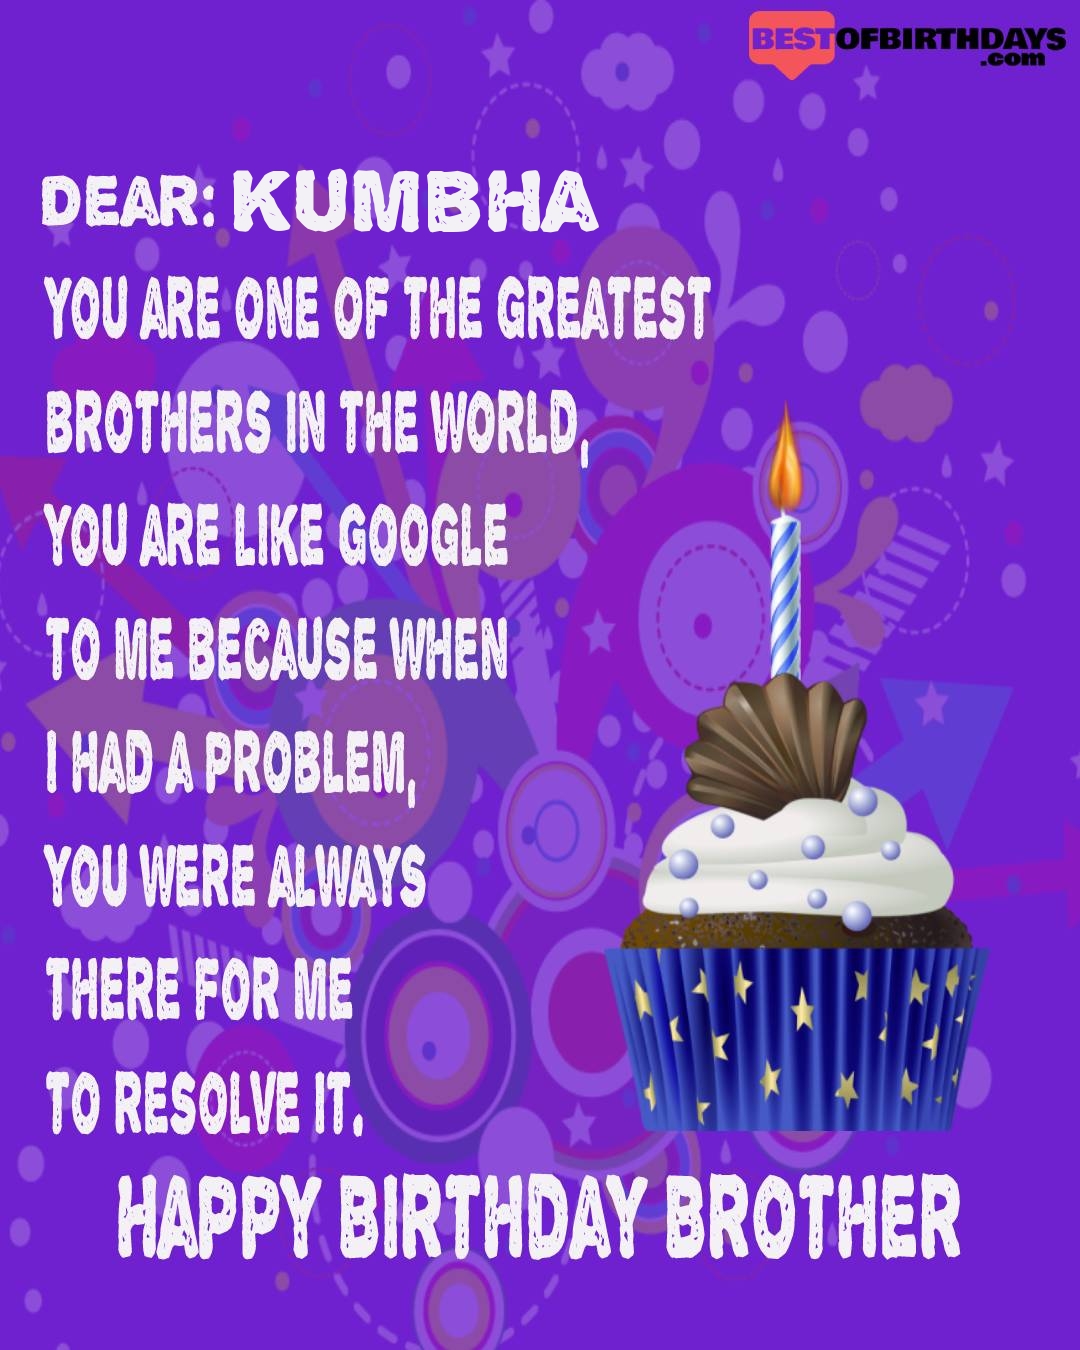 Happy birthday kumbha bhai brother bro